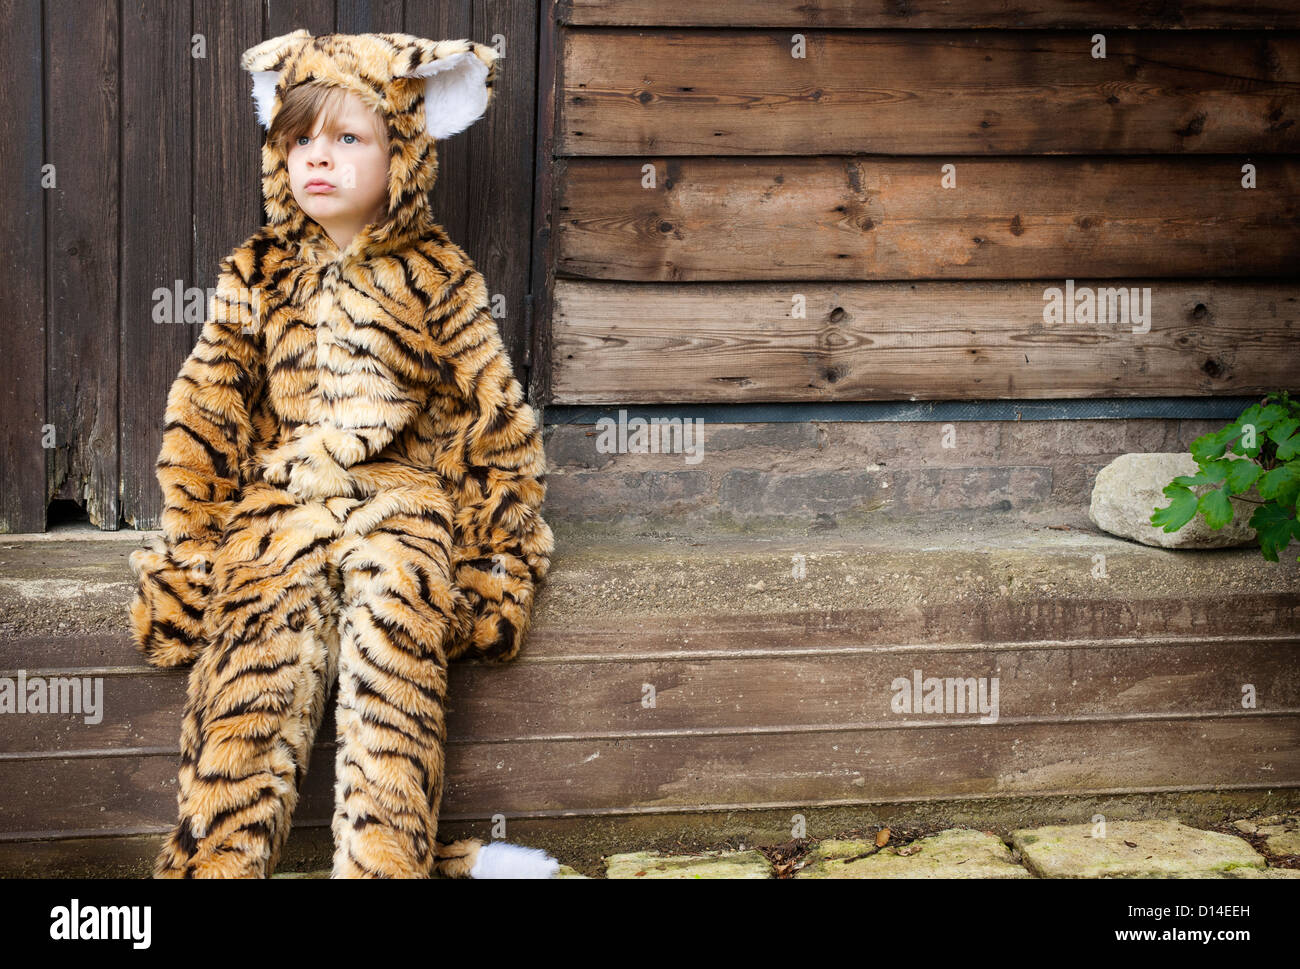 Jungen tragen Tiger Kostüm im freien Stockfotografie - Alamy